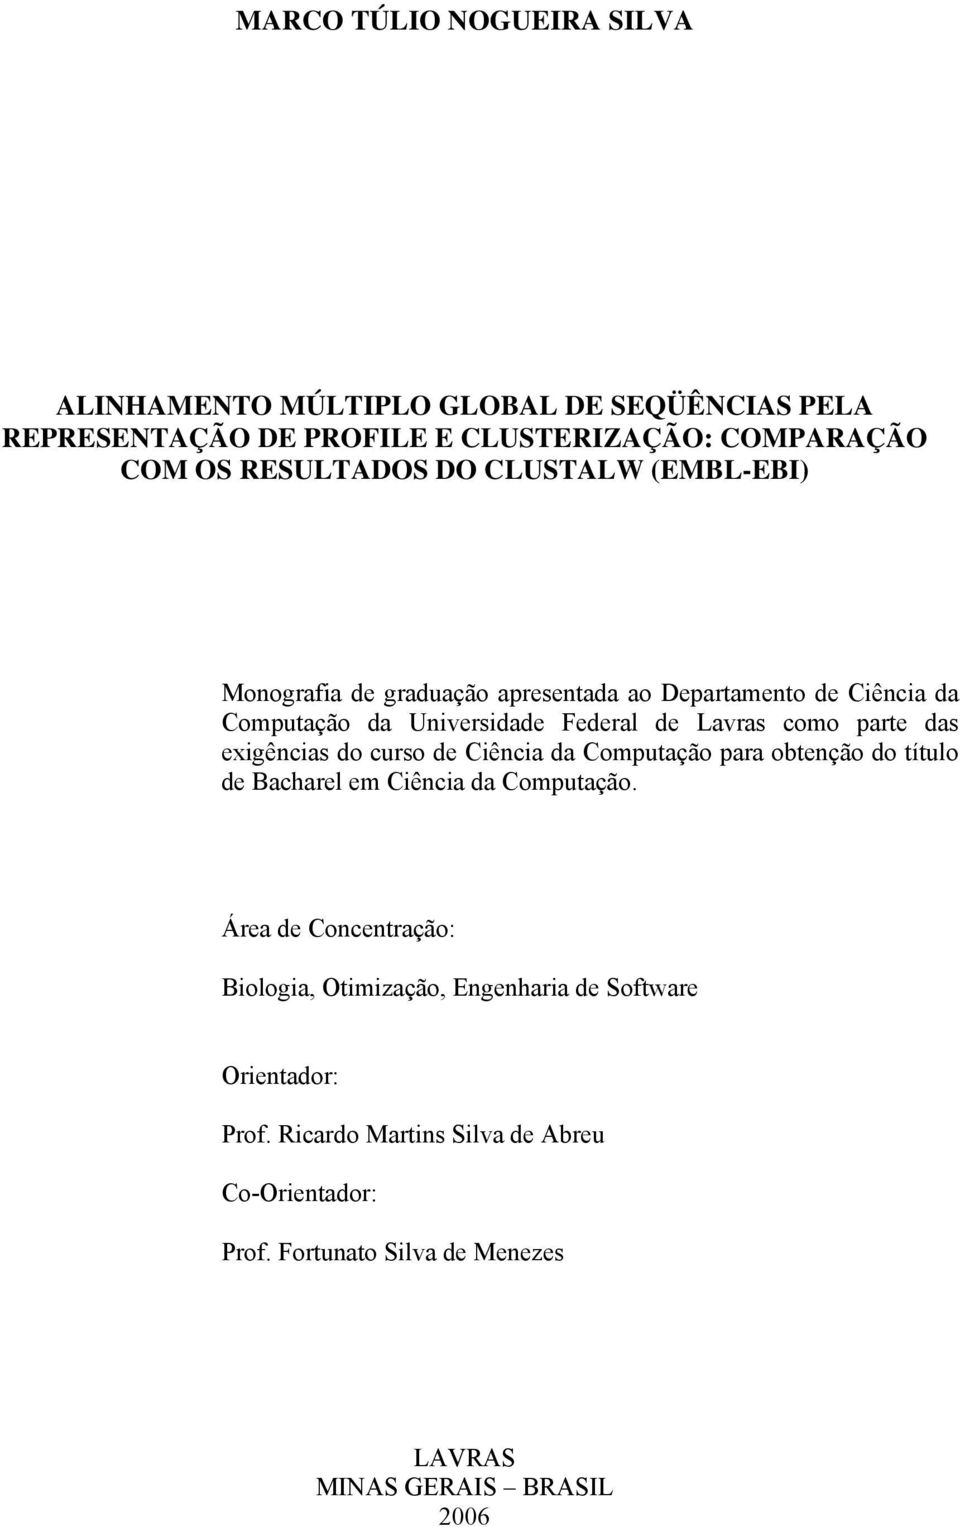 exigências do curso de Ciência da Computação para obtenção do título de Bacharel em Ciência da Computação.